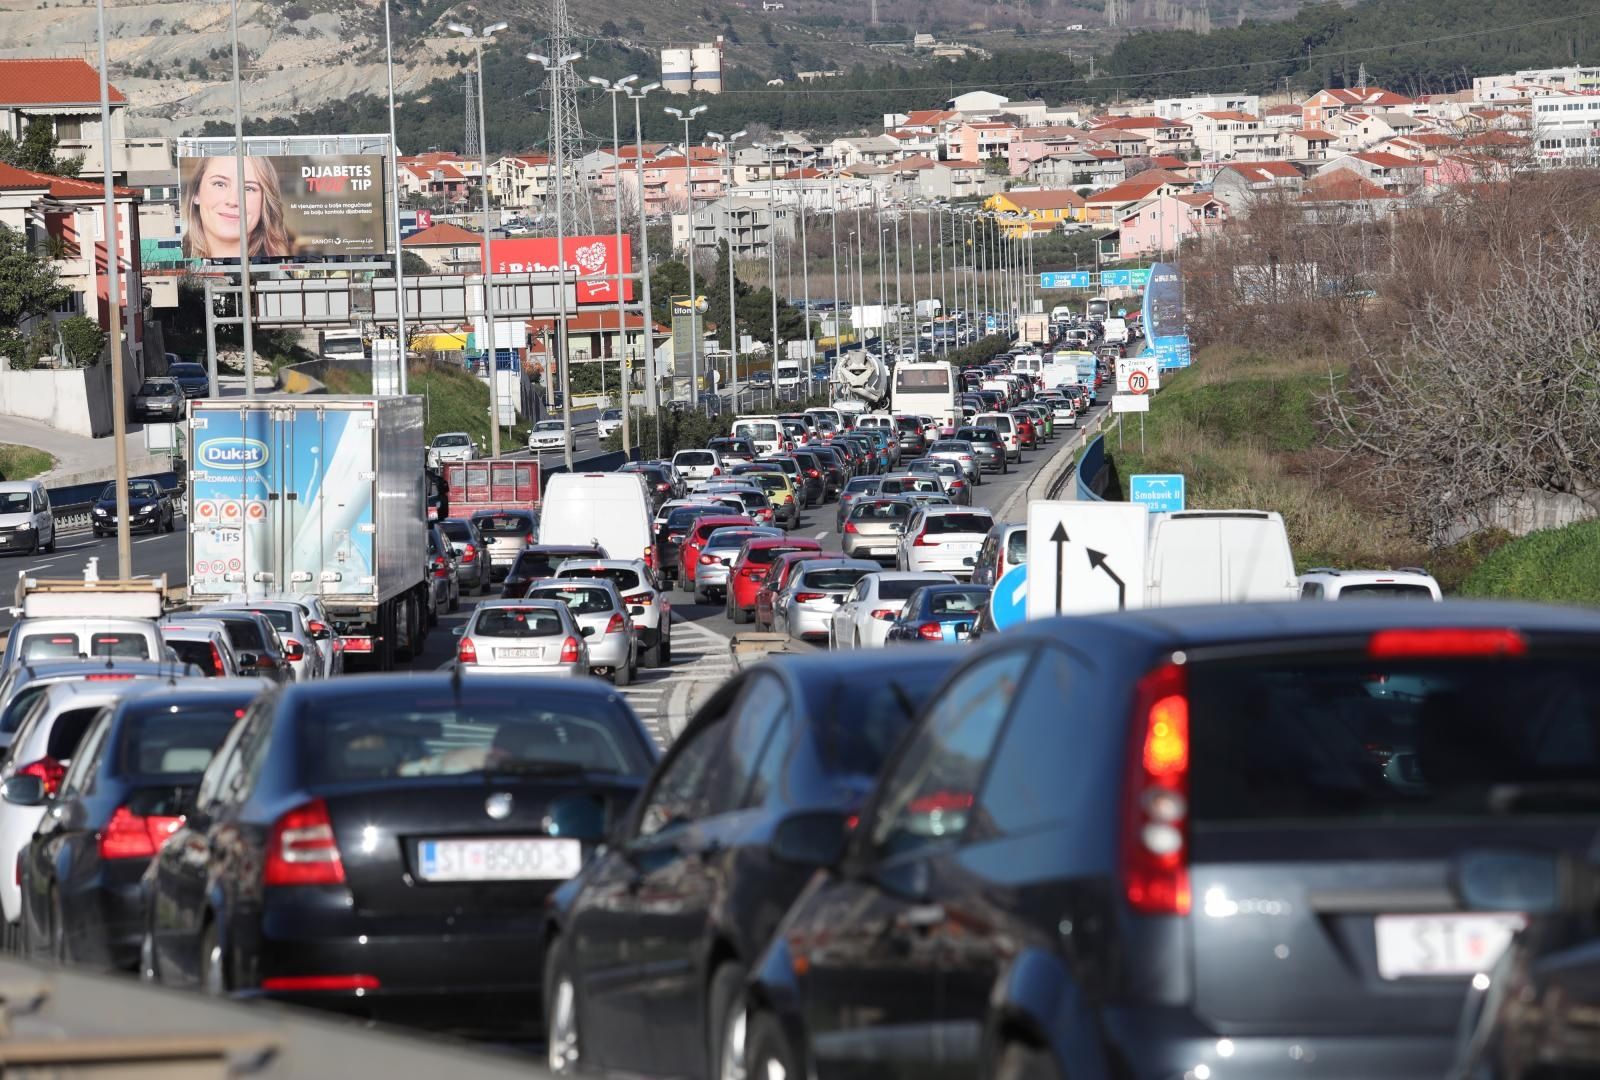 11.02.2021., Split - Velike guzve u prometu stvorile su se zbog zatvaranja brze ceste Solin-Klis zbog ocevida nakon teske prometne nesrece.
Photo: Ivo Cagalj/PIXSELL